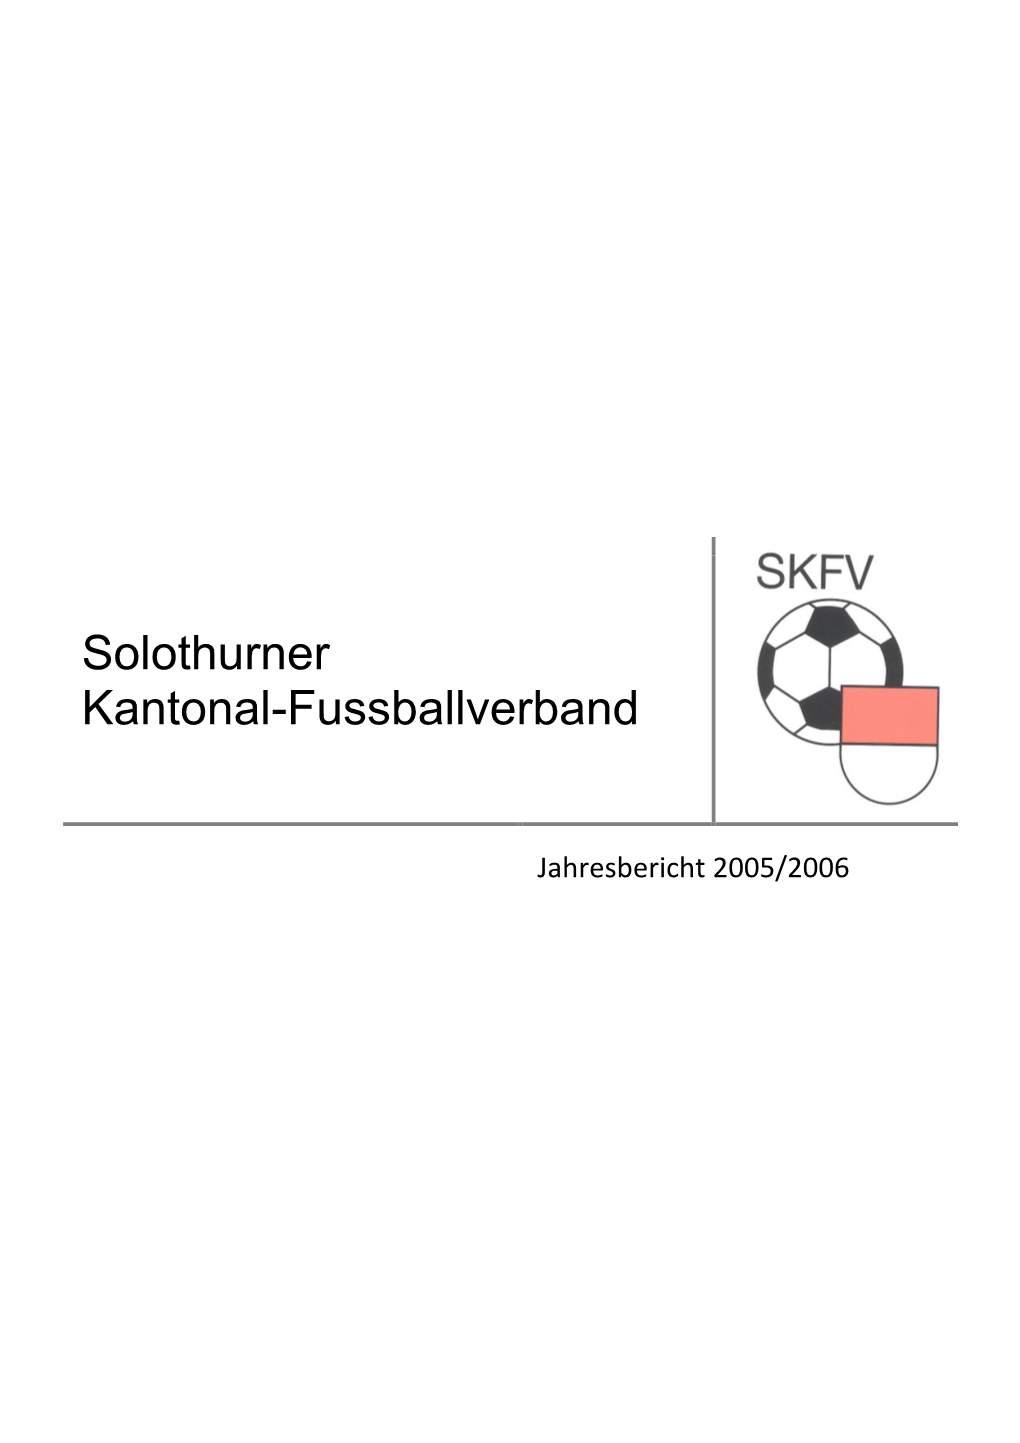 Solothurner Kantonal-Fussballverband